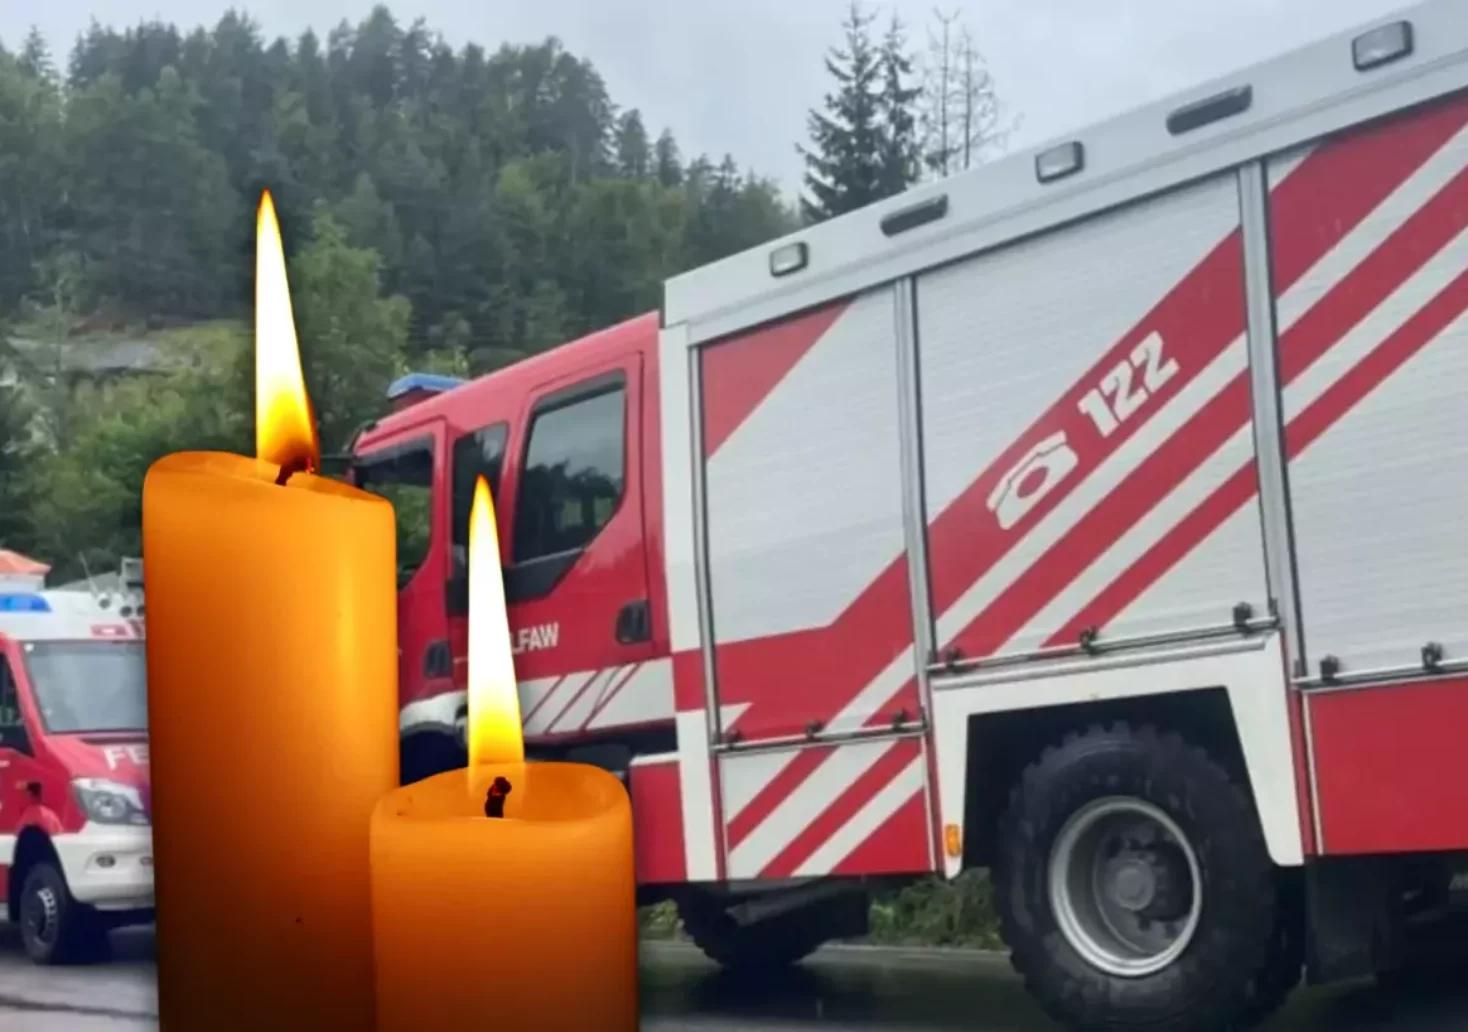 Bild auf 5min.at zeigt Feuerwehrautos und zwei Kerzen.